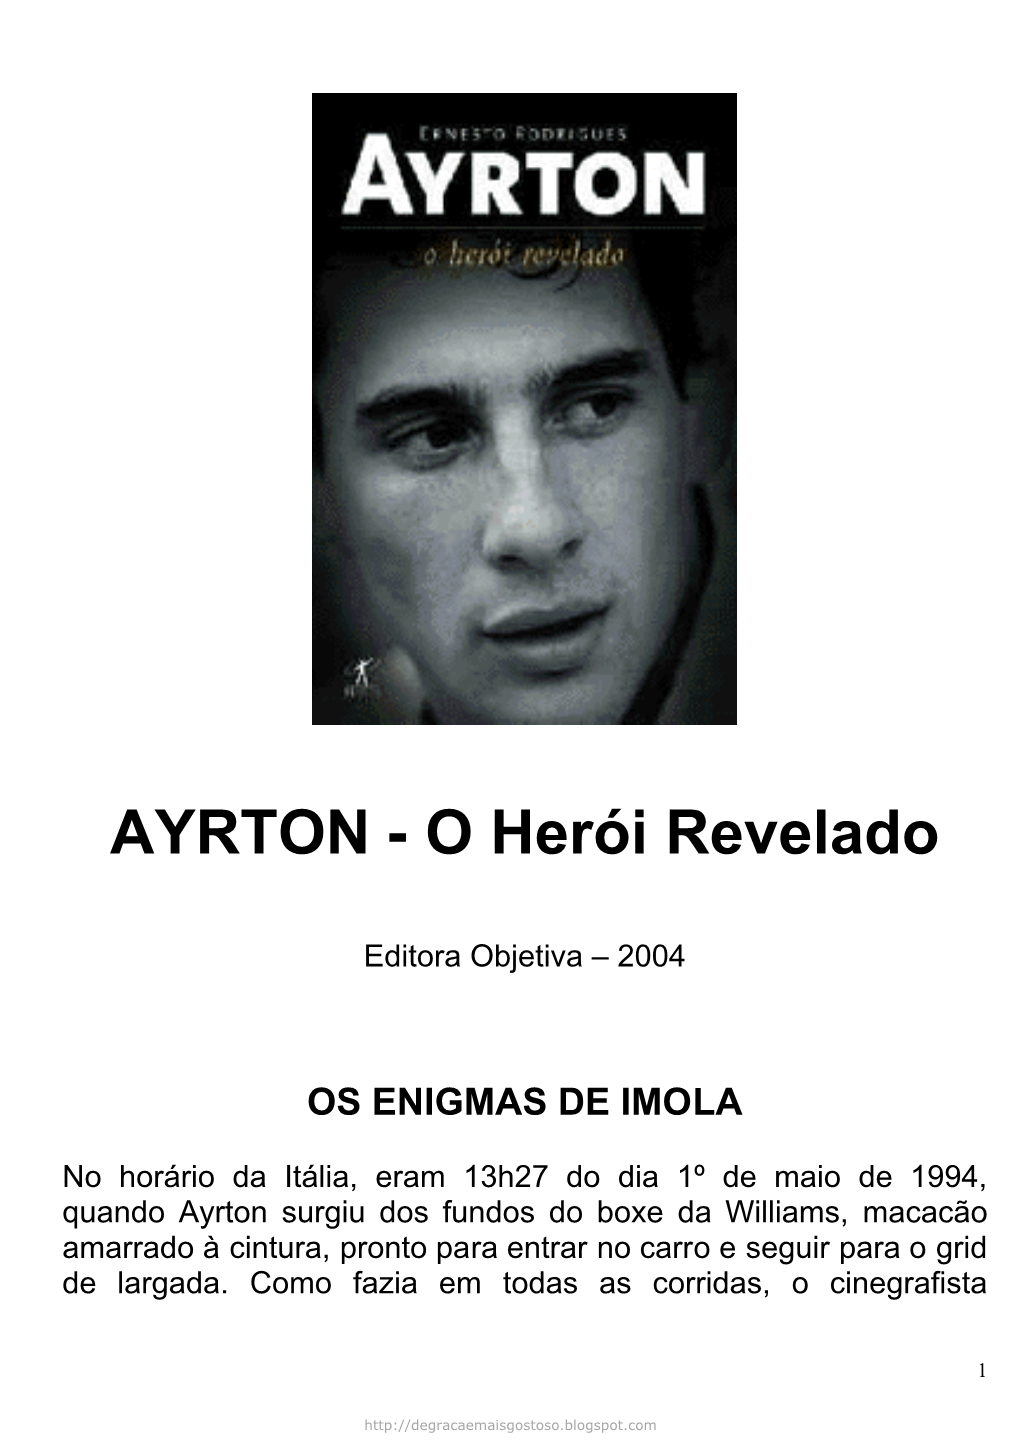 AYRTON - O Herói Revelado